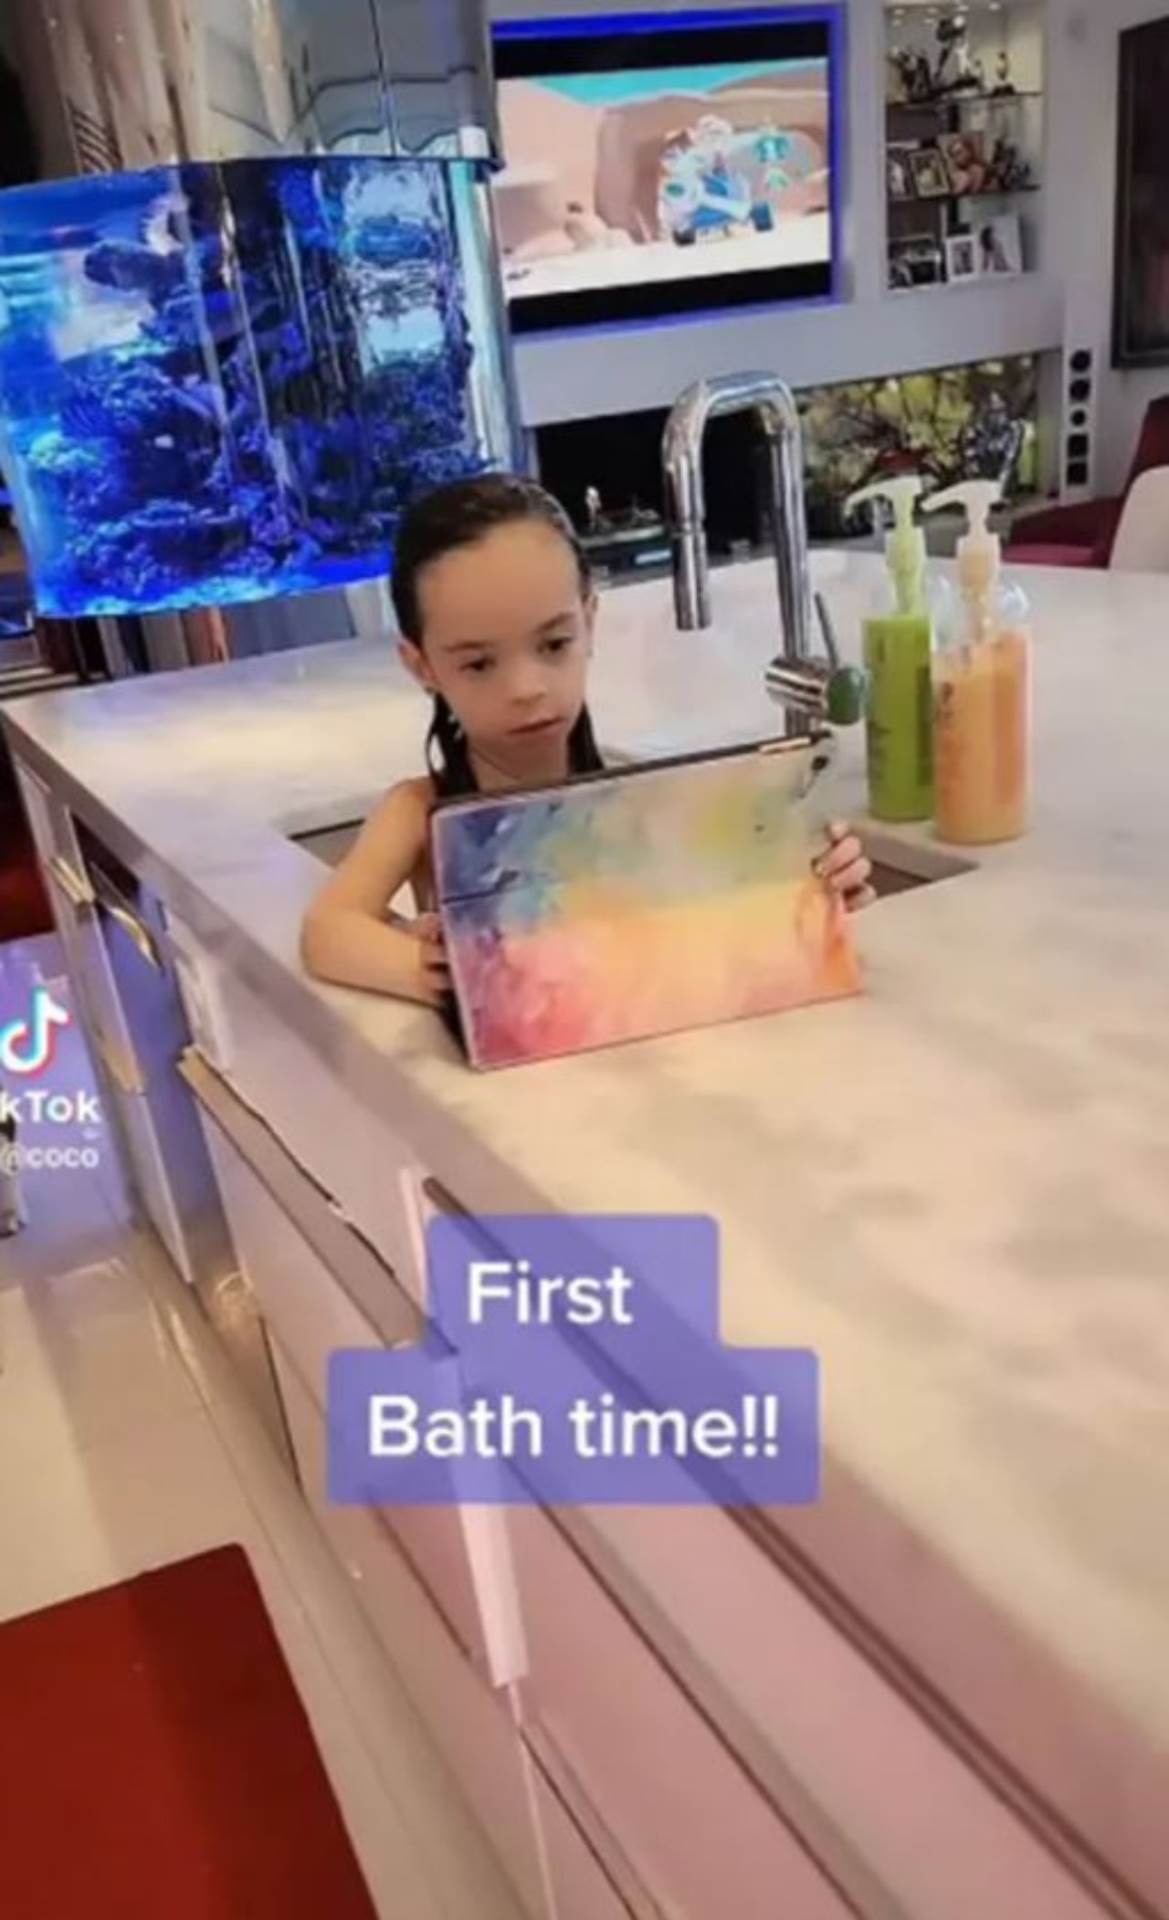  Ćerka Koko Ostin kupa se u sudoperi. 